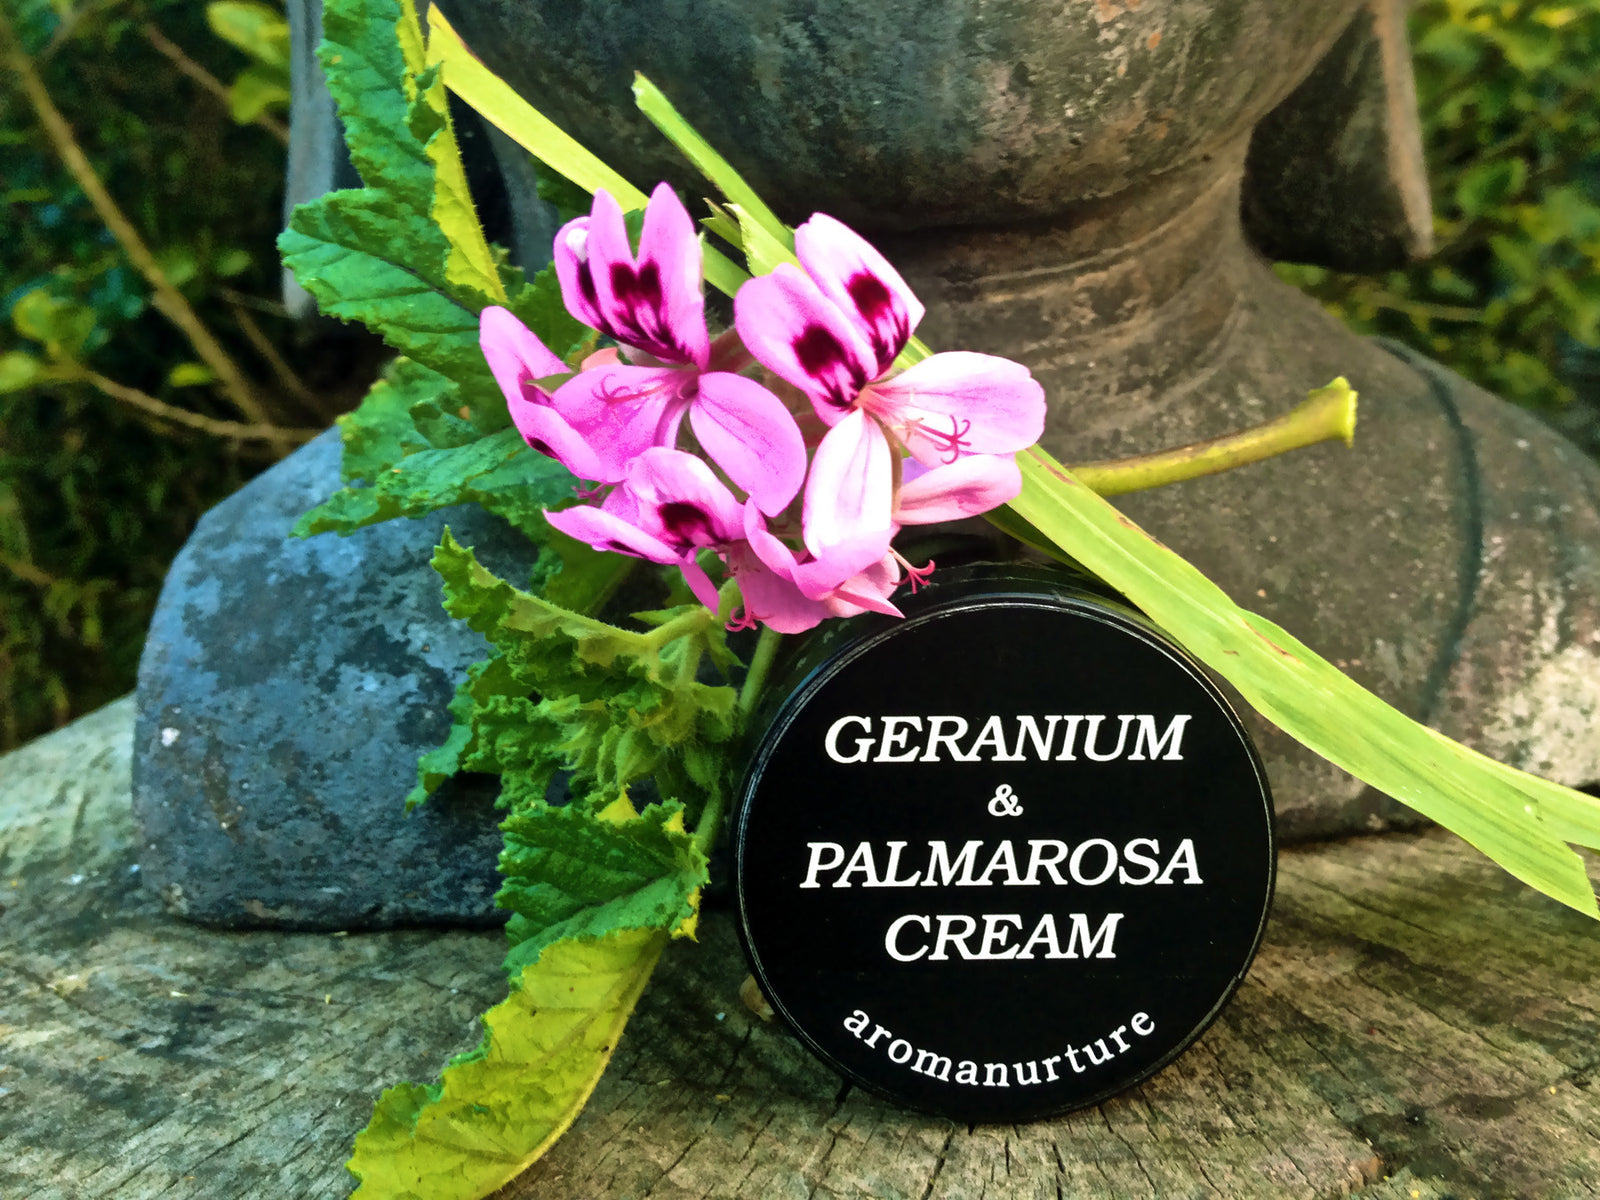 Geranium/Palmarosa Cream